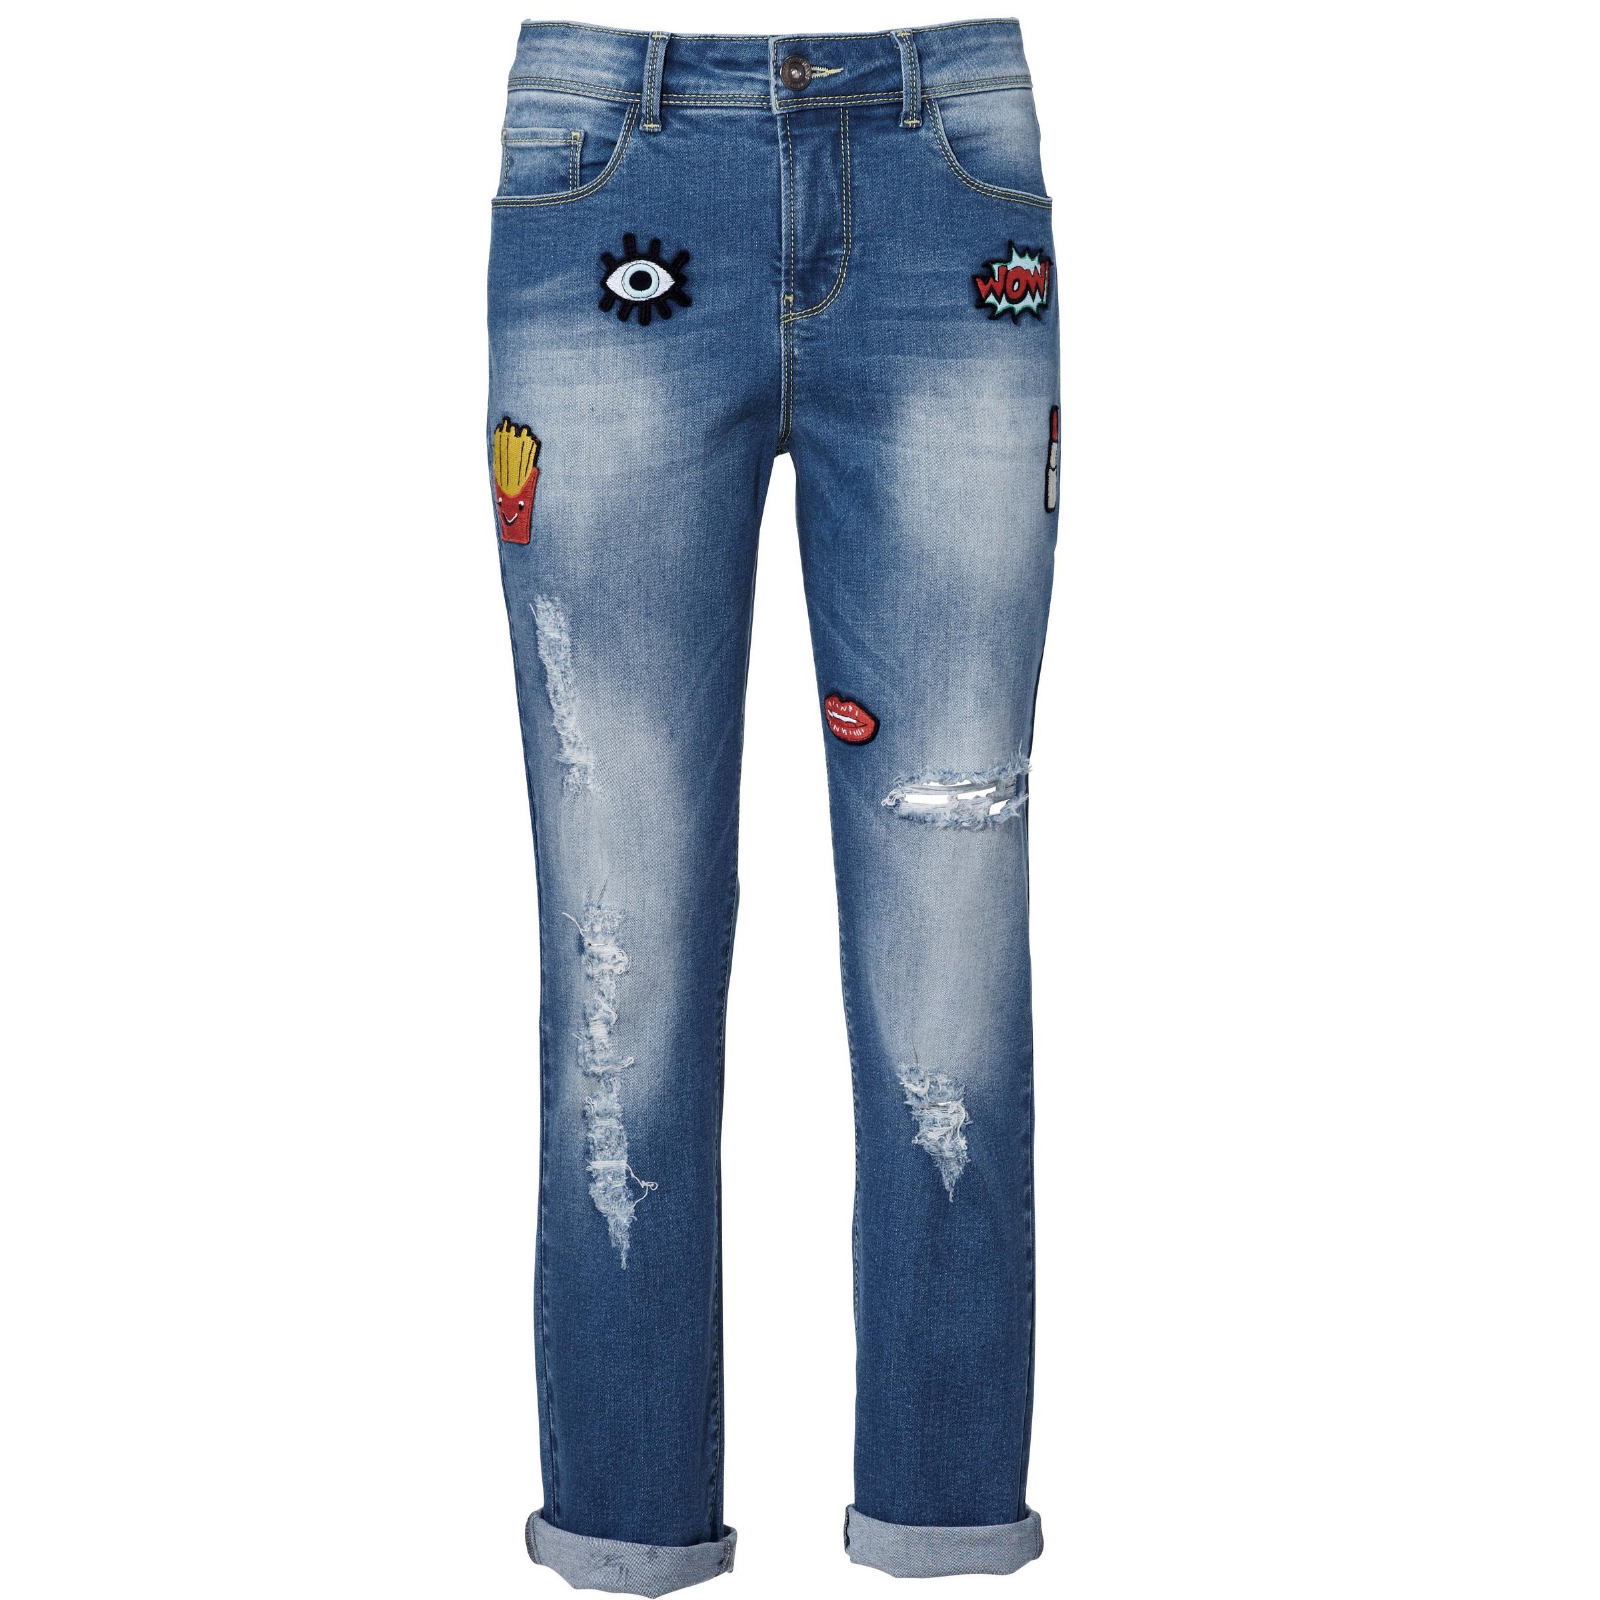 Trendige Patchwork Boyfriend Jeans – Stylische Knöchellänge für den Modernen Look